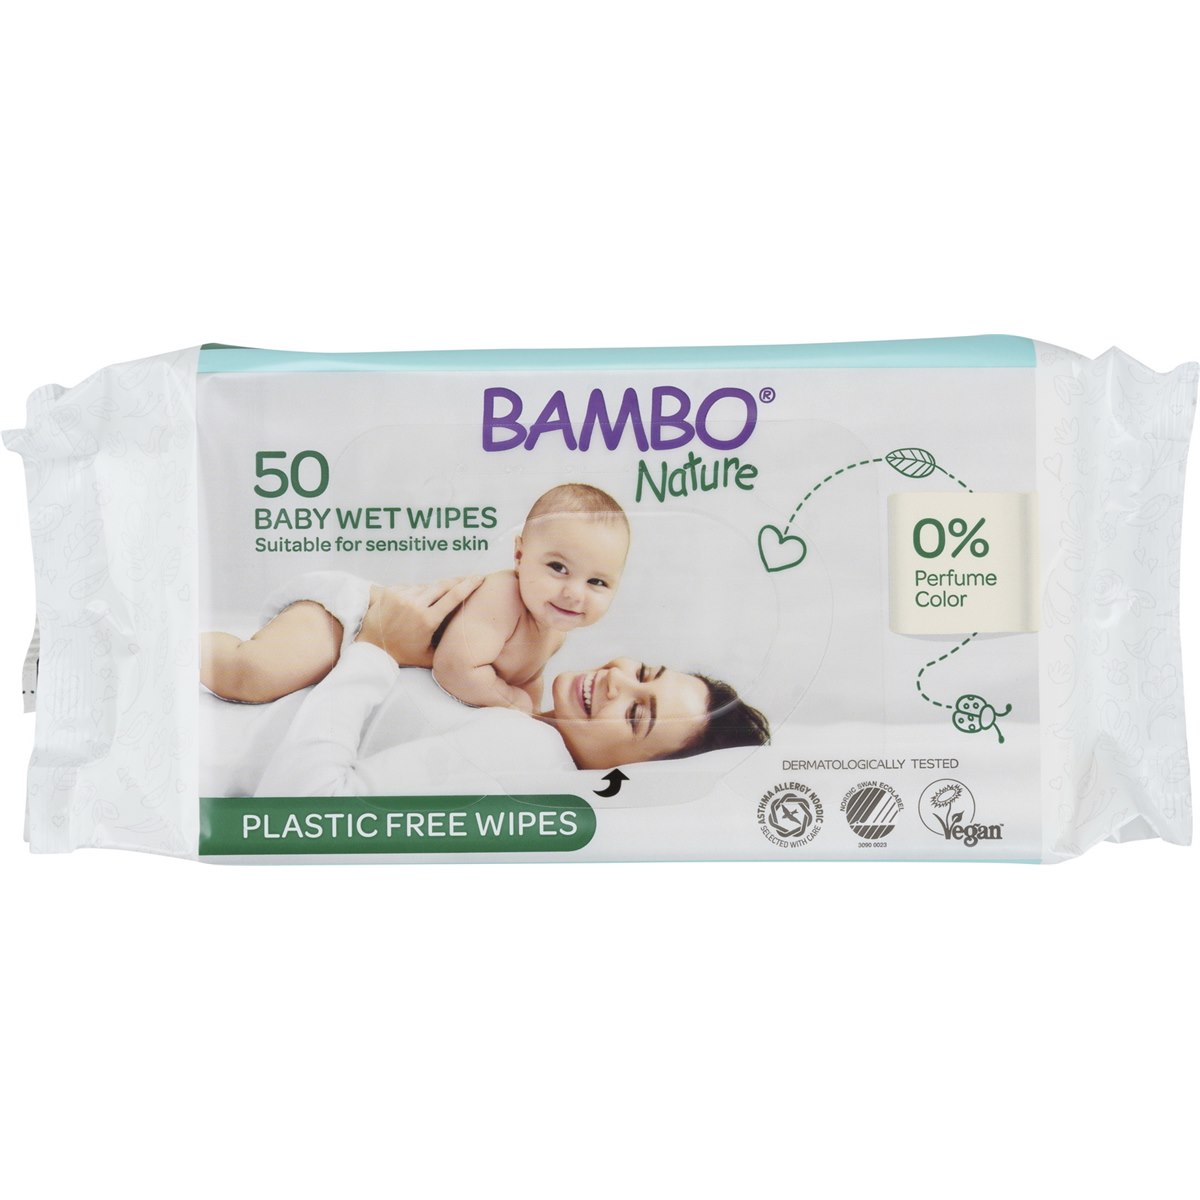 Leven van Beven Decoratief Bambo Nature Eco Babydoekjes Bio Afbreekbaar 50 Stuks milieuvriendelijk